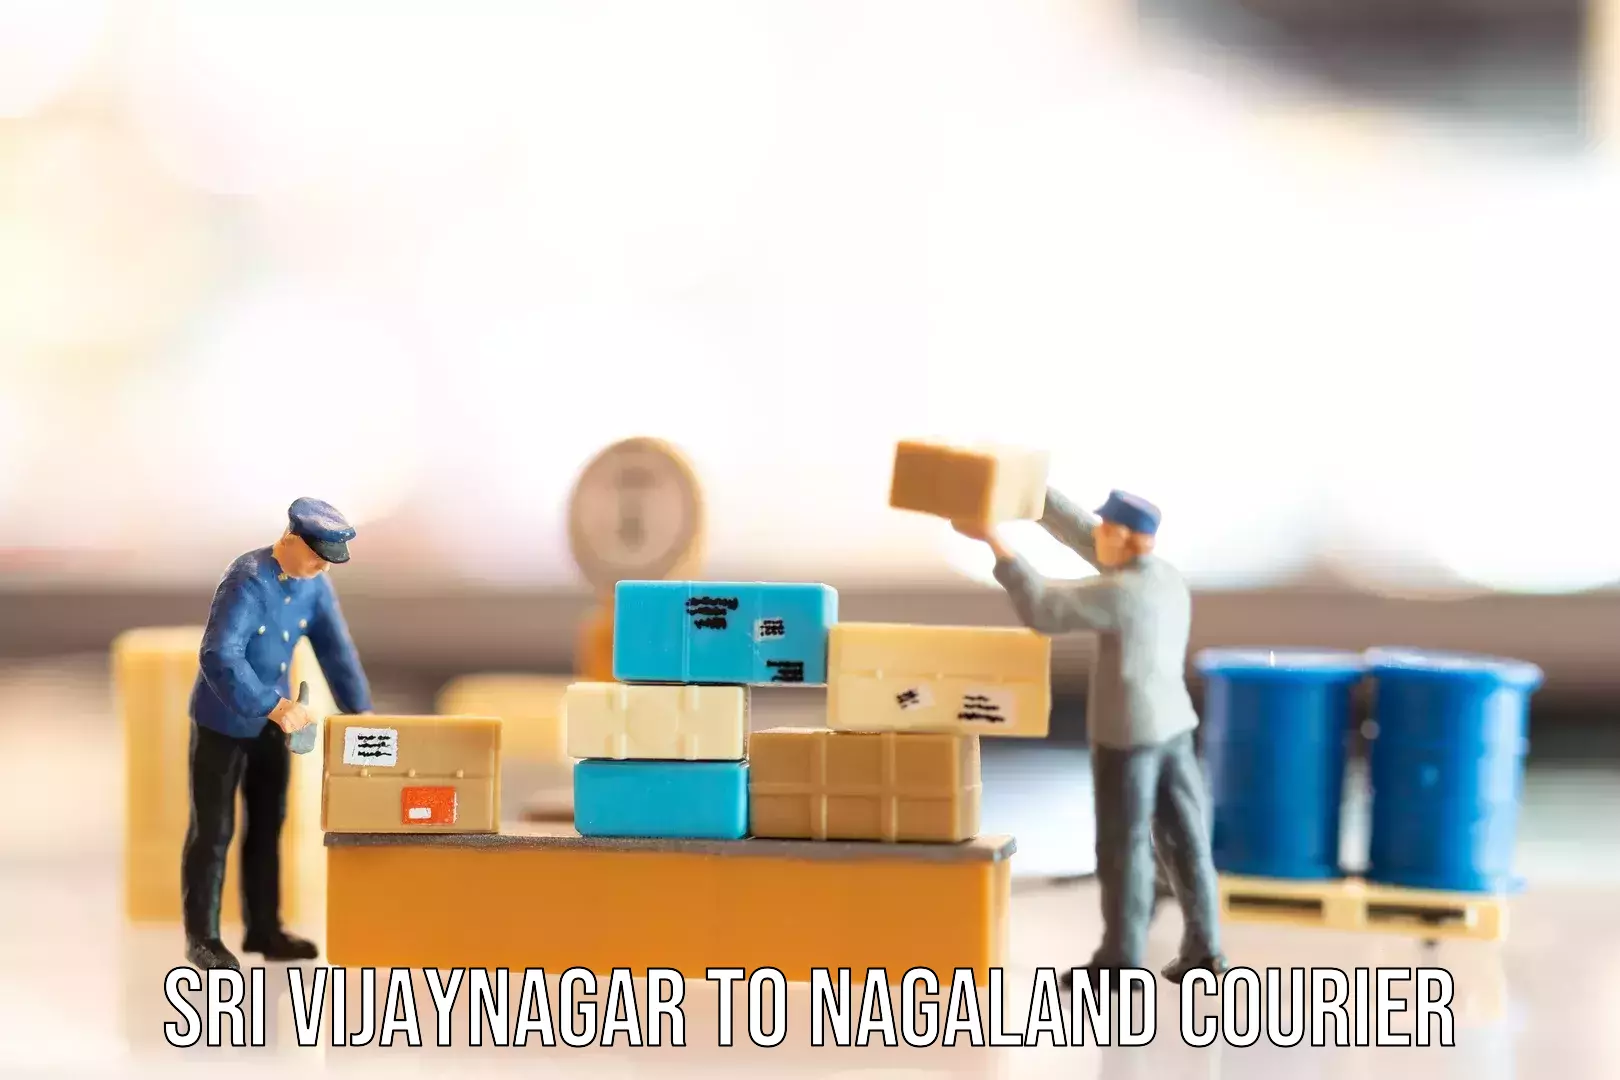 Same day luggage service Sri Vijaynagar to Nagaland